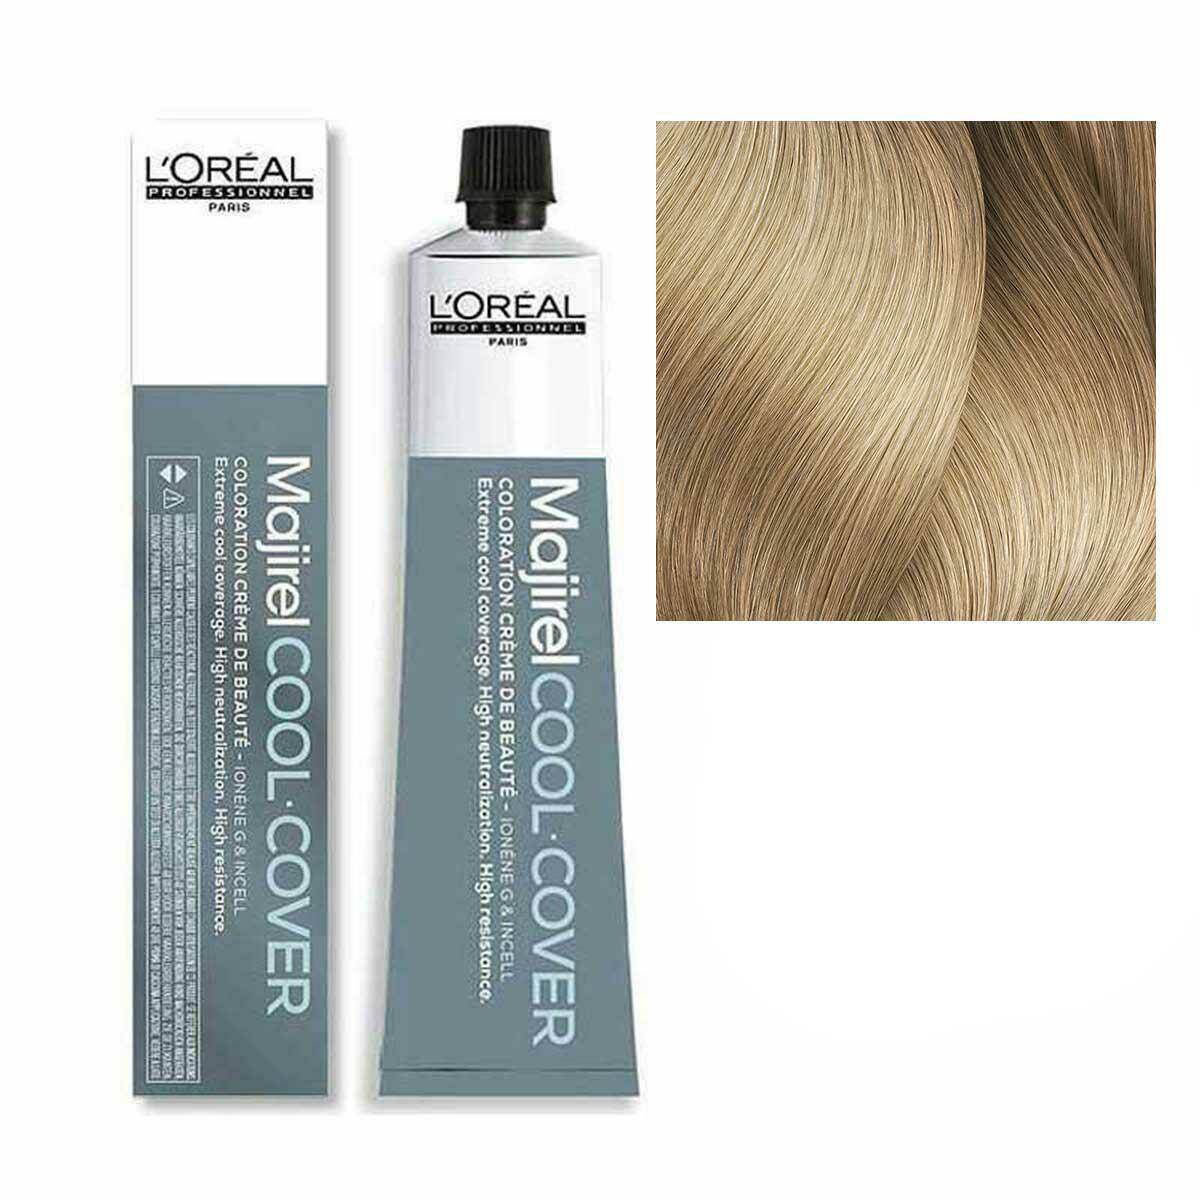 Loreal Majirel Cool Cover Farba do włosów - 10 Bardzo bardzo jasny blond, chłodne odcienie 50ml